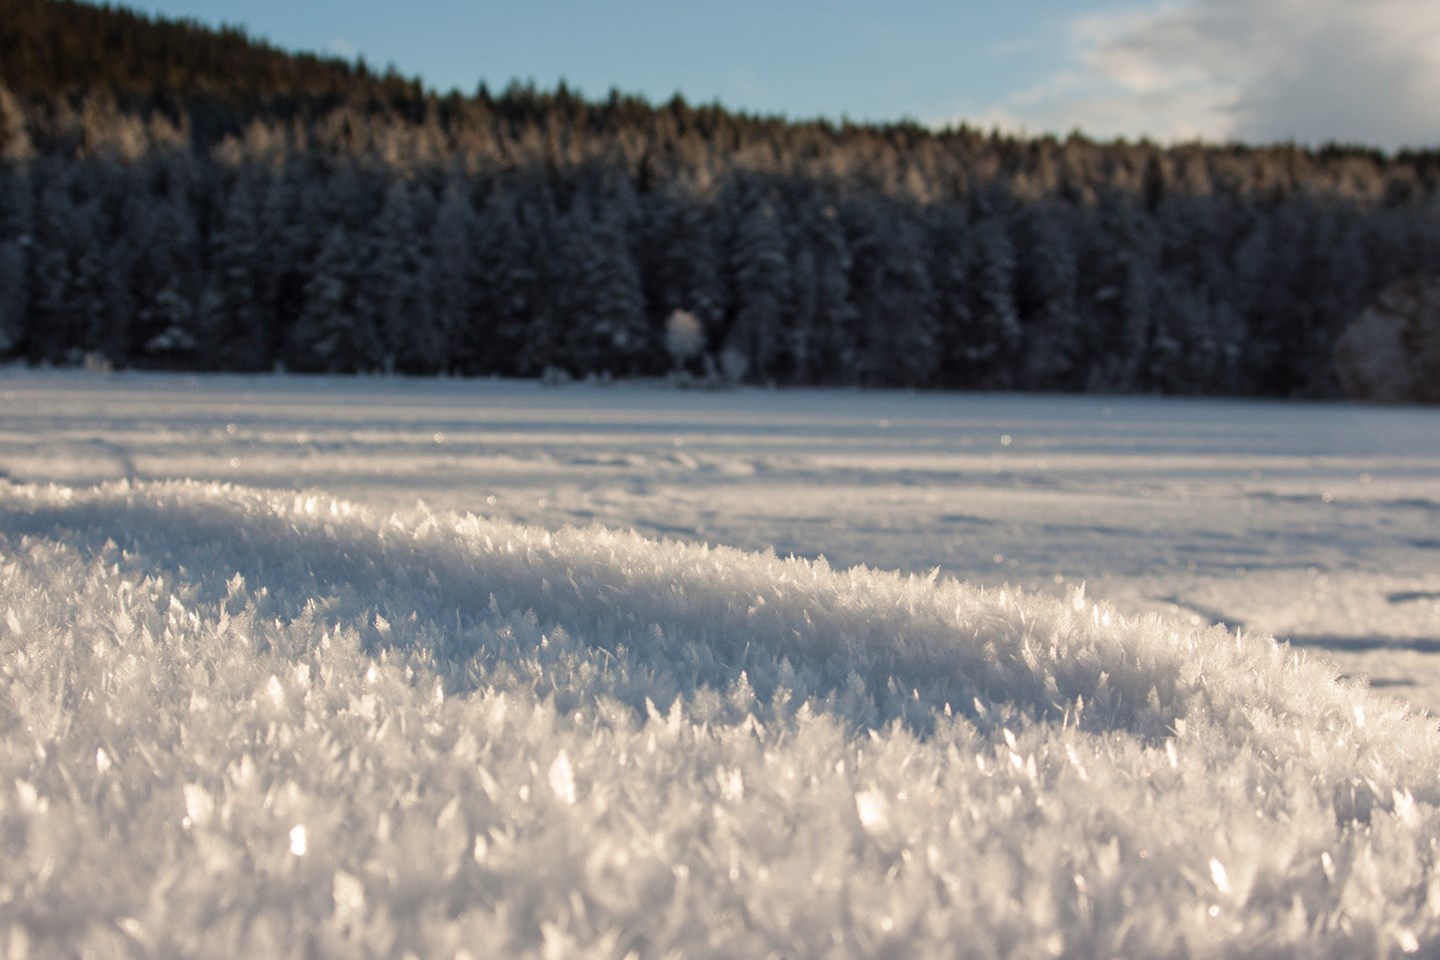 Godt utviklete rimkrystaller på overflaten av snødekket.